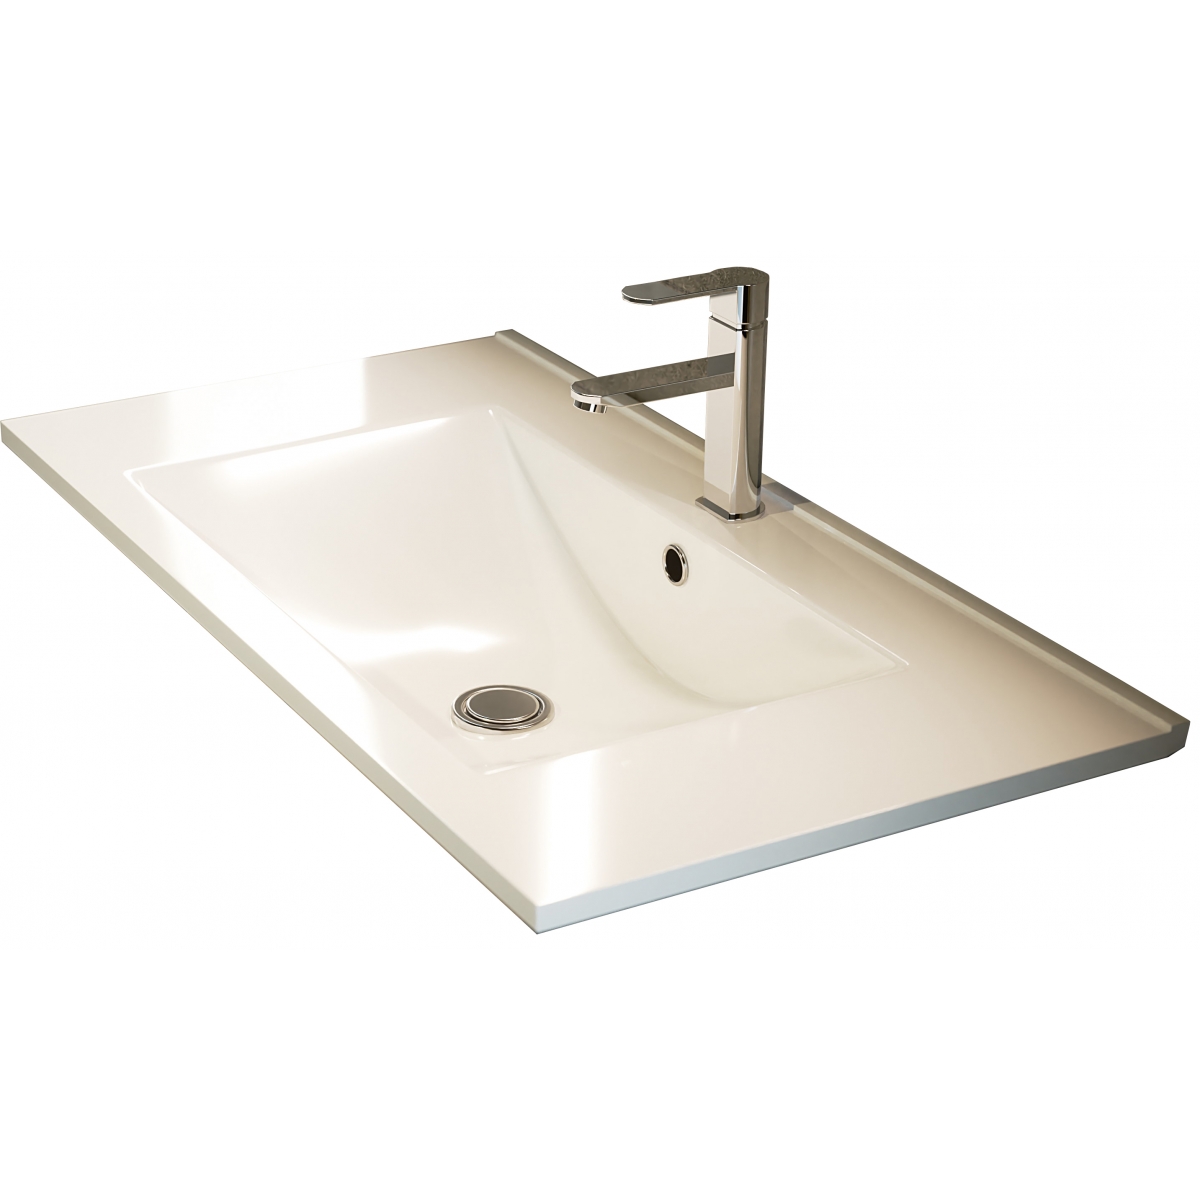 Detalle de Mueble de baño suspendido Dundee de 60 cm de ancho color Blanco Lacado con lavabo integrado